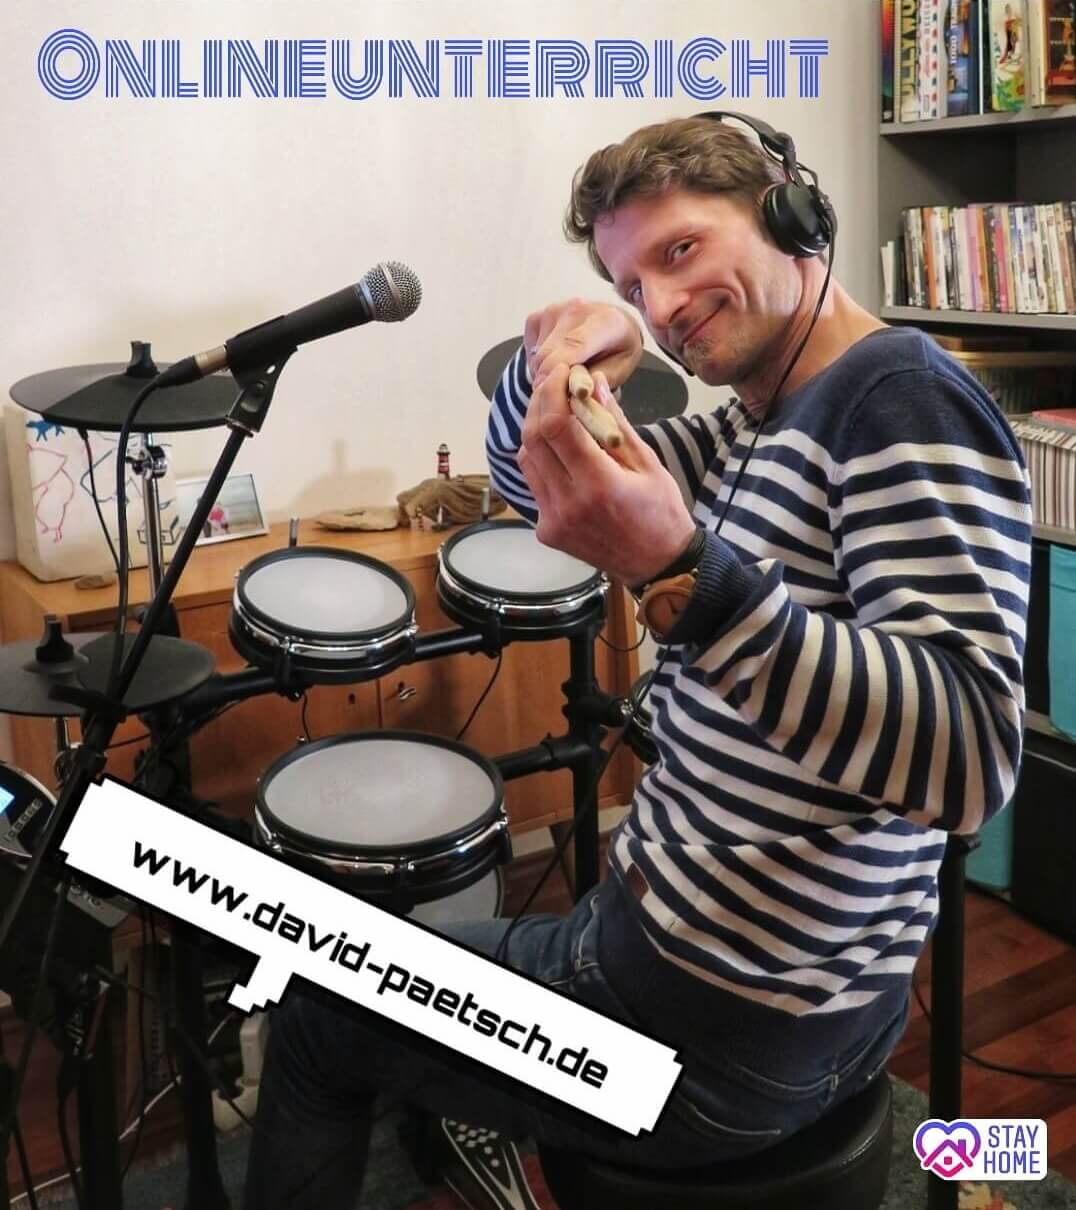 Online Schlagzeug unterricht in München: David Pätsch am Drumset